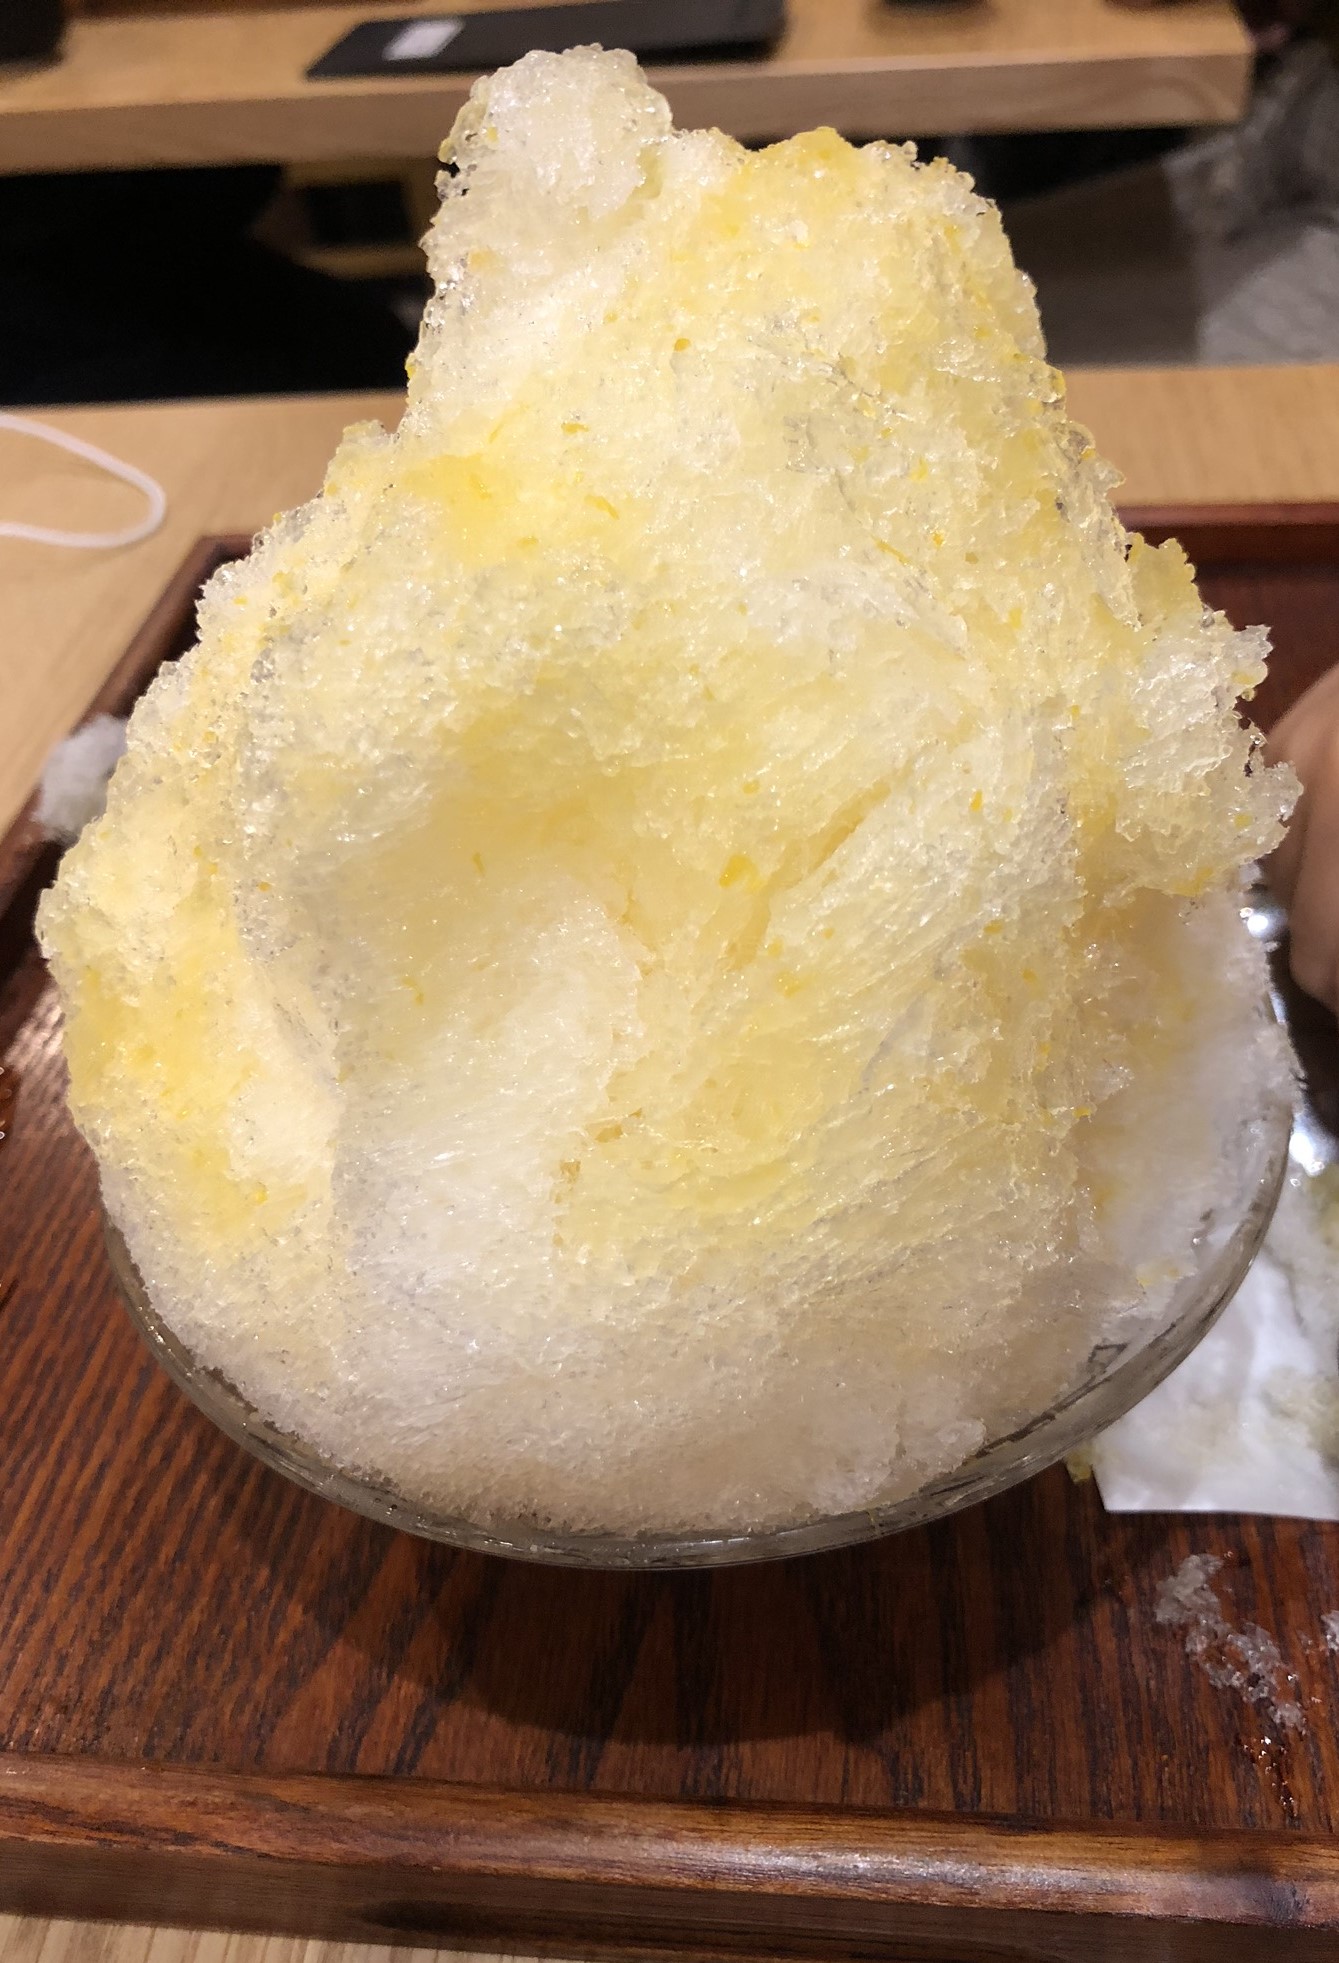 べたなぎ夏みかんかき氷日本式